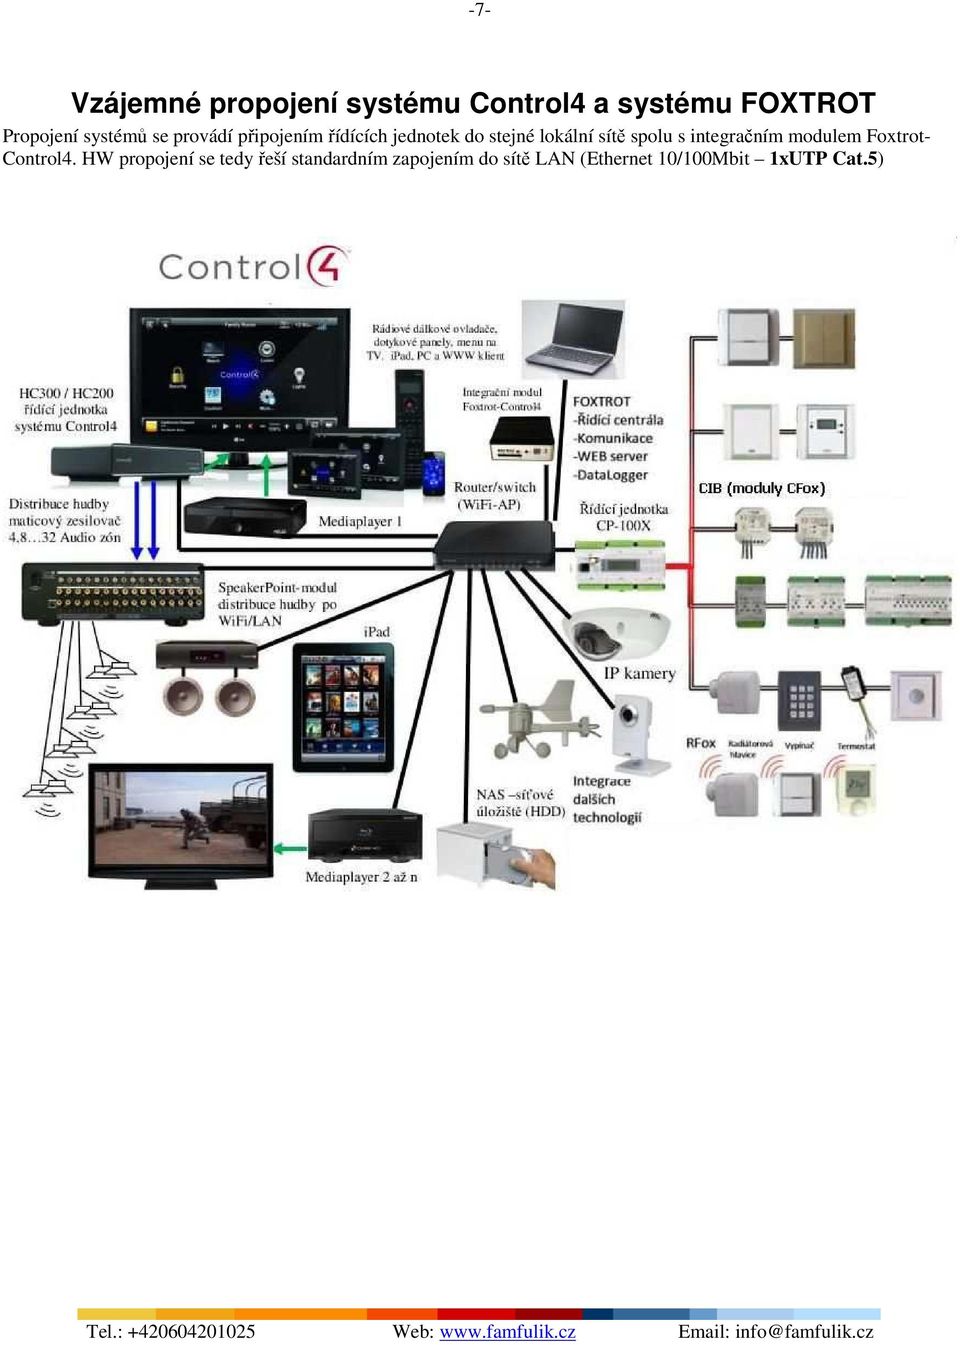 sítě spolu s integračním modulem Foxtrot- Control4.